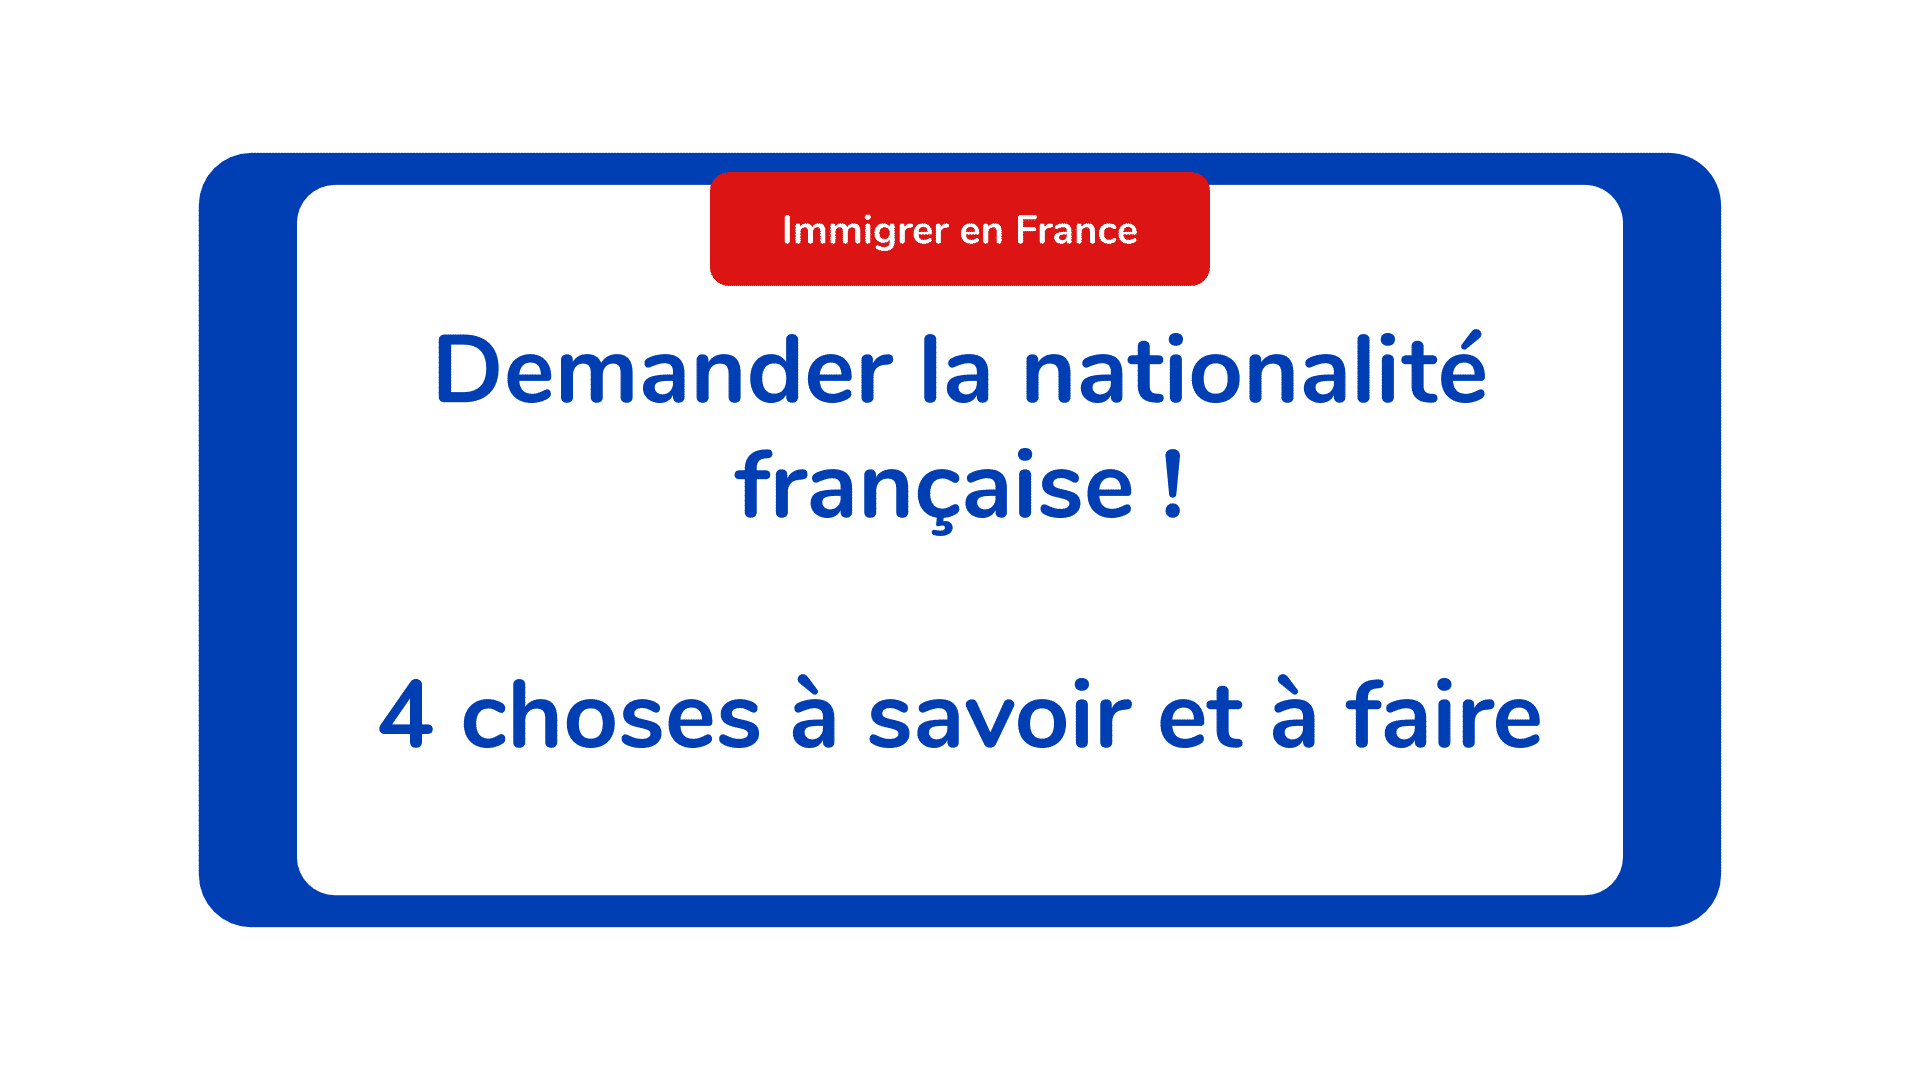 Demander la nationalité française ! 4 choses à savoir et à faire